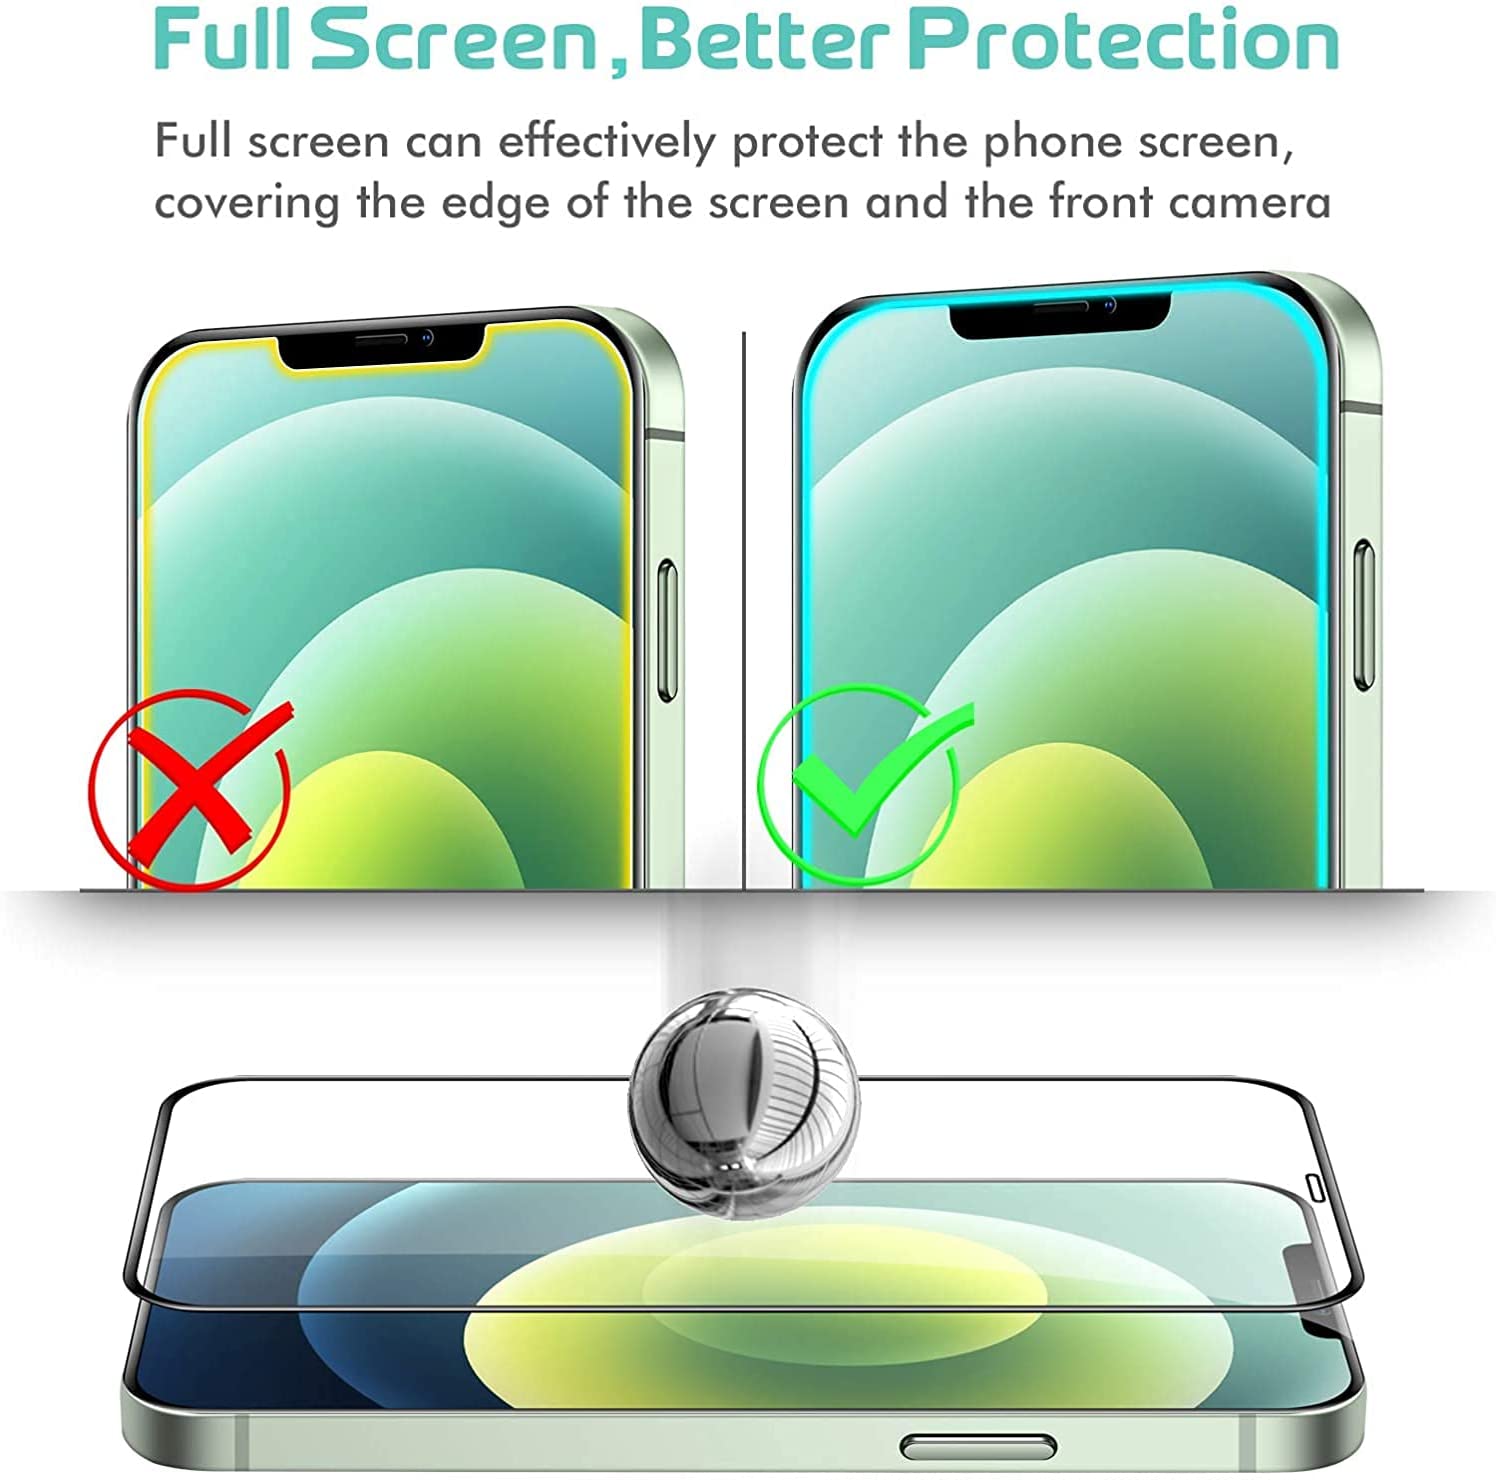 Protector Pantalla Cristal Templado COOL para iPhone 14 Pro Max (NEON) -  Cool Accesorios